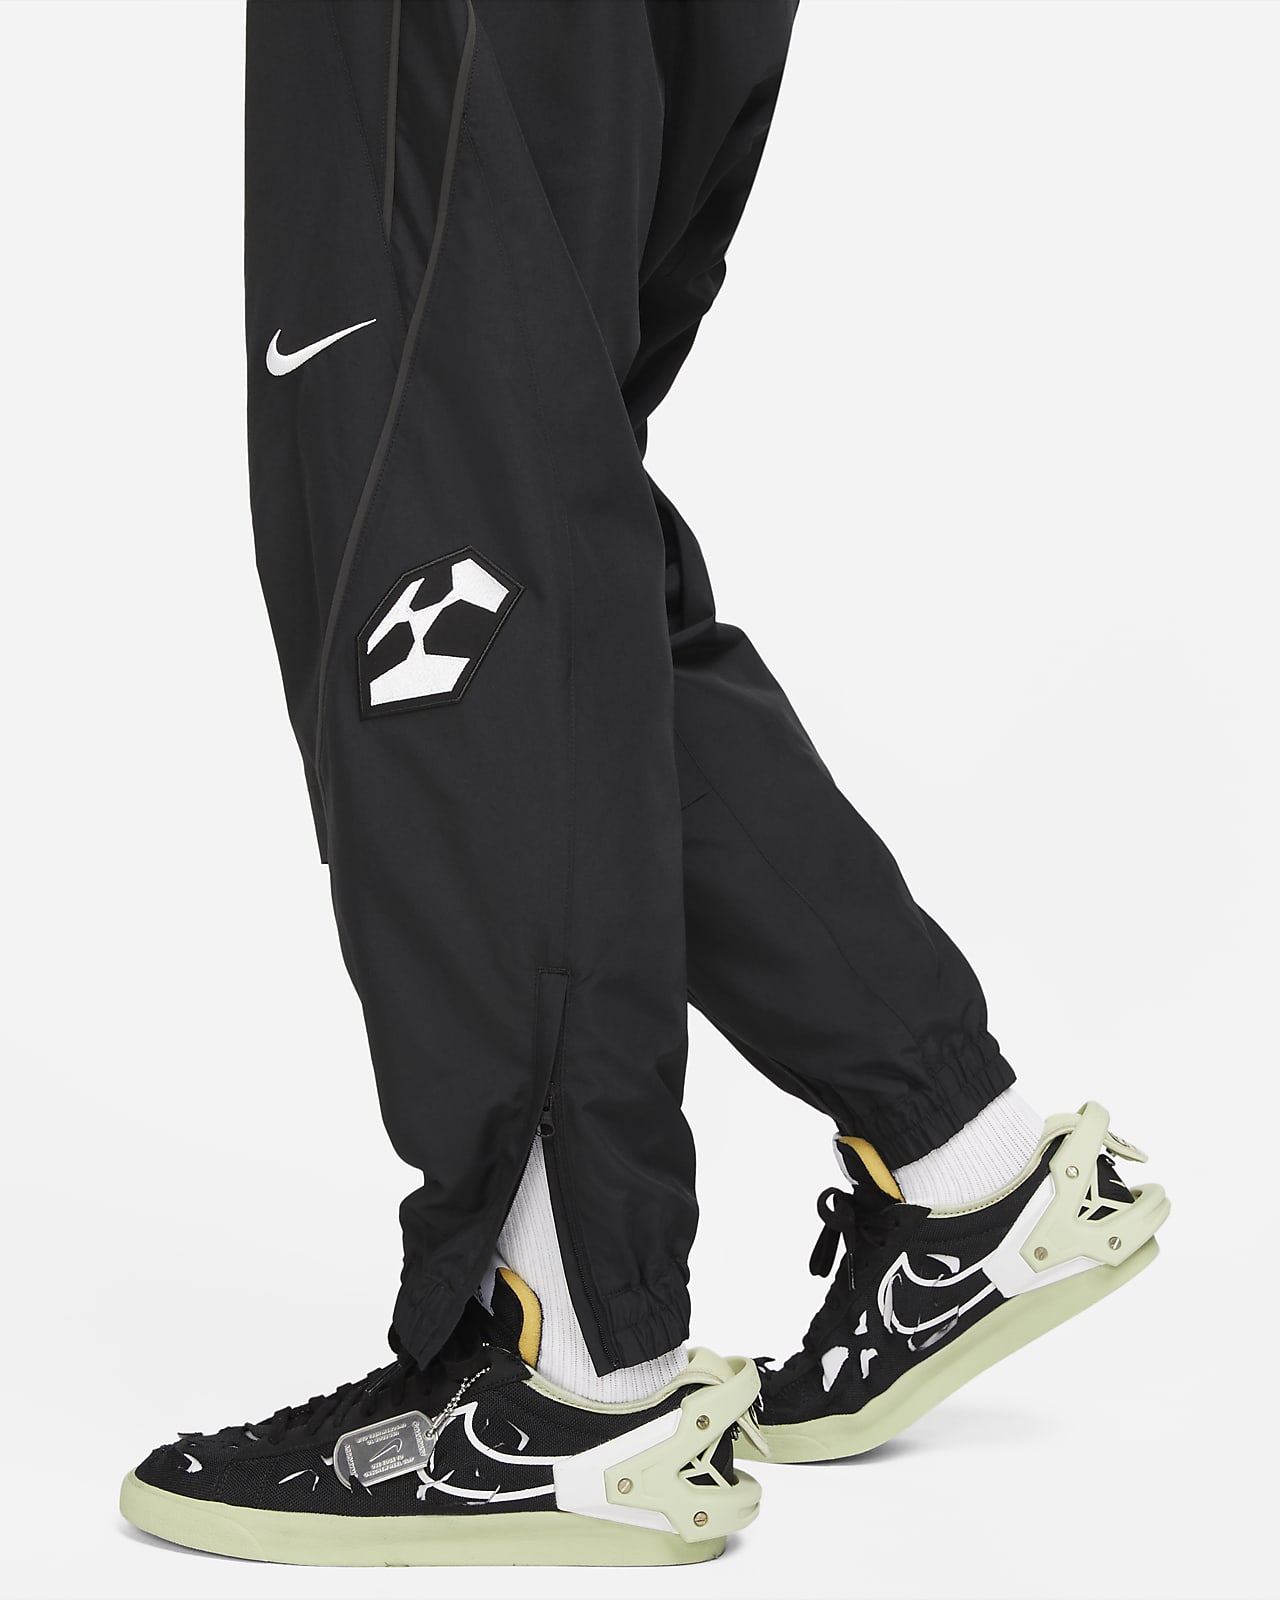 状態は写真でご確認くださいACRONYM × Nike woven track pants black M